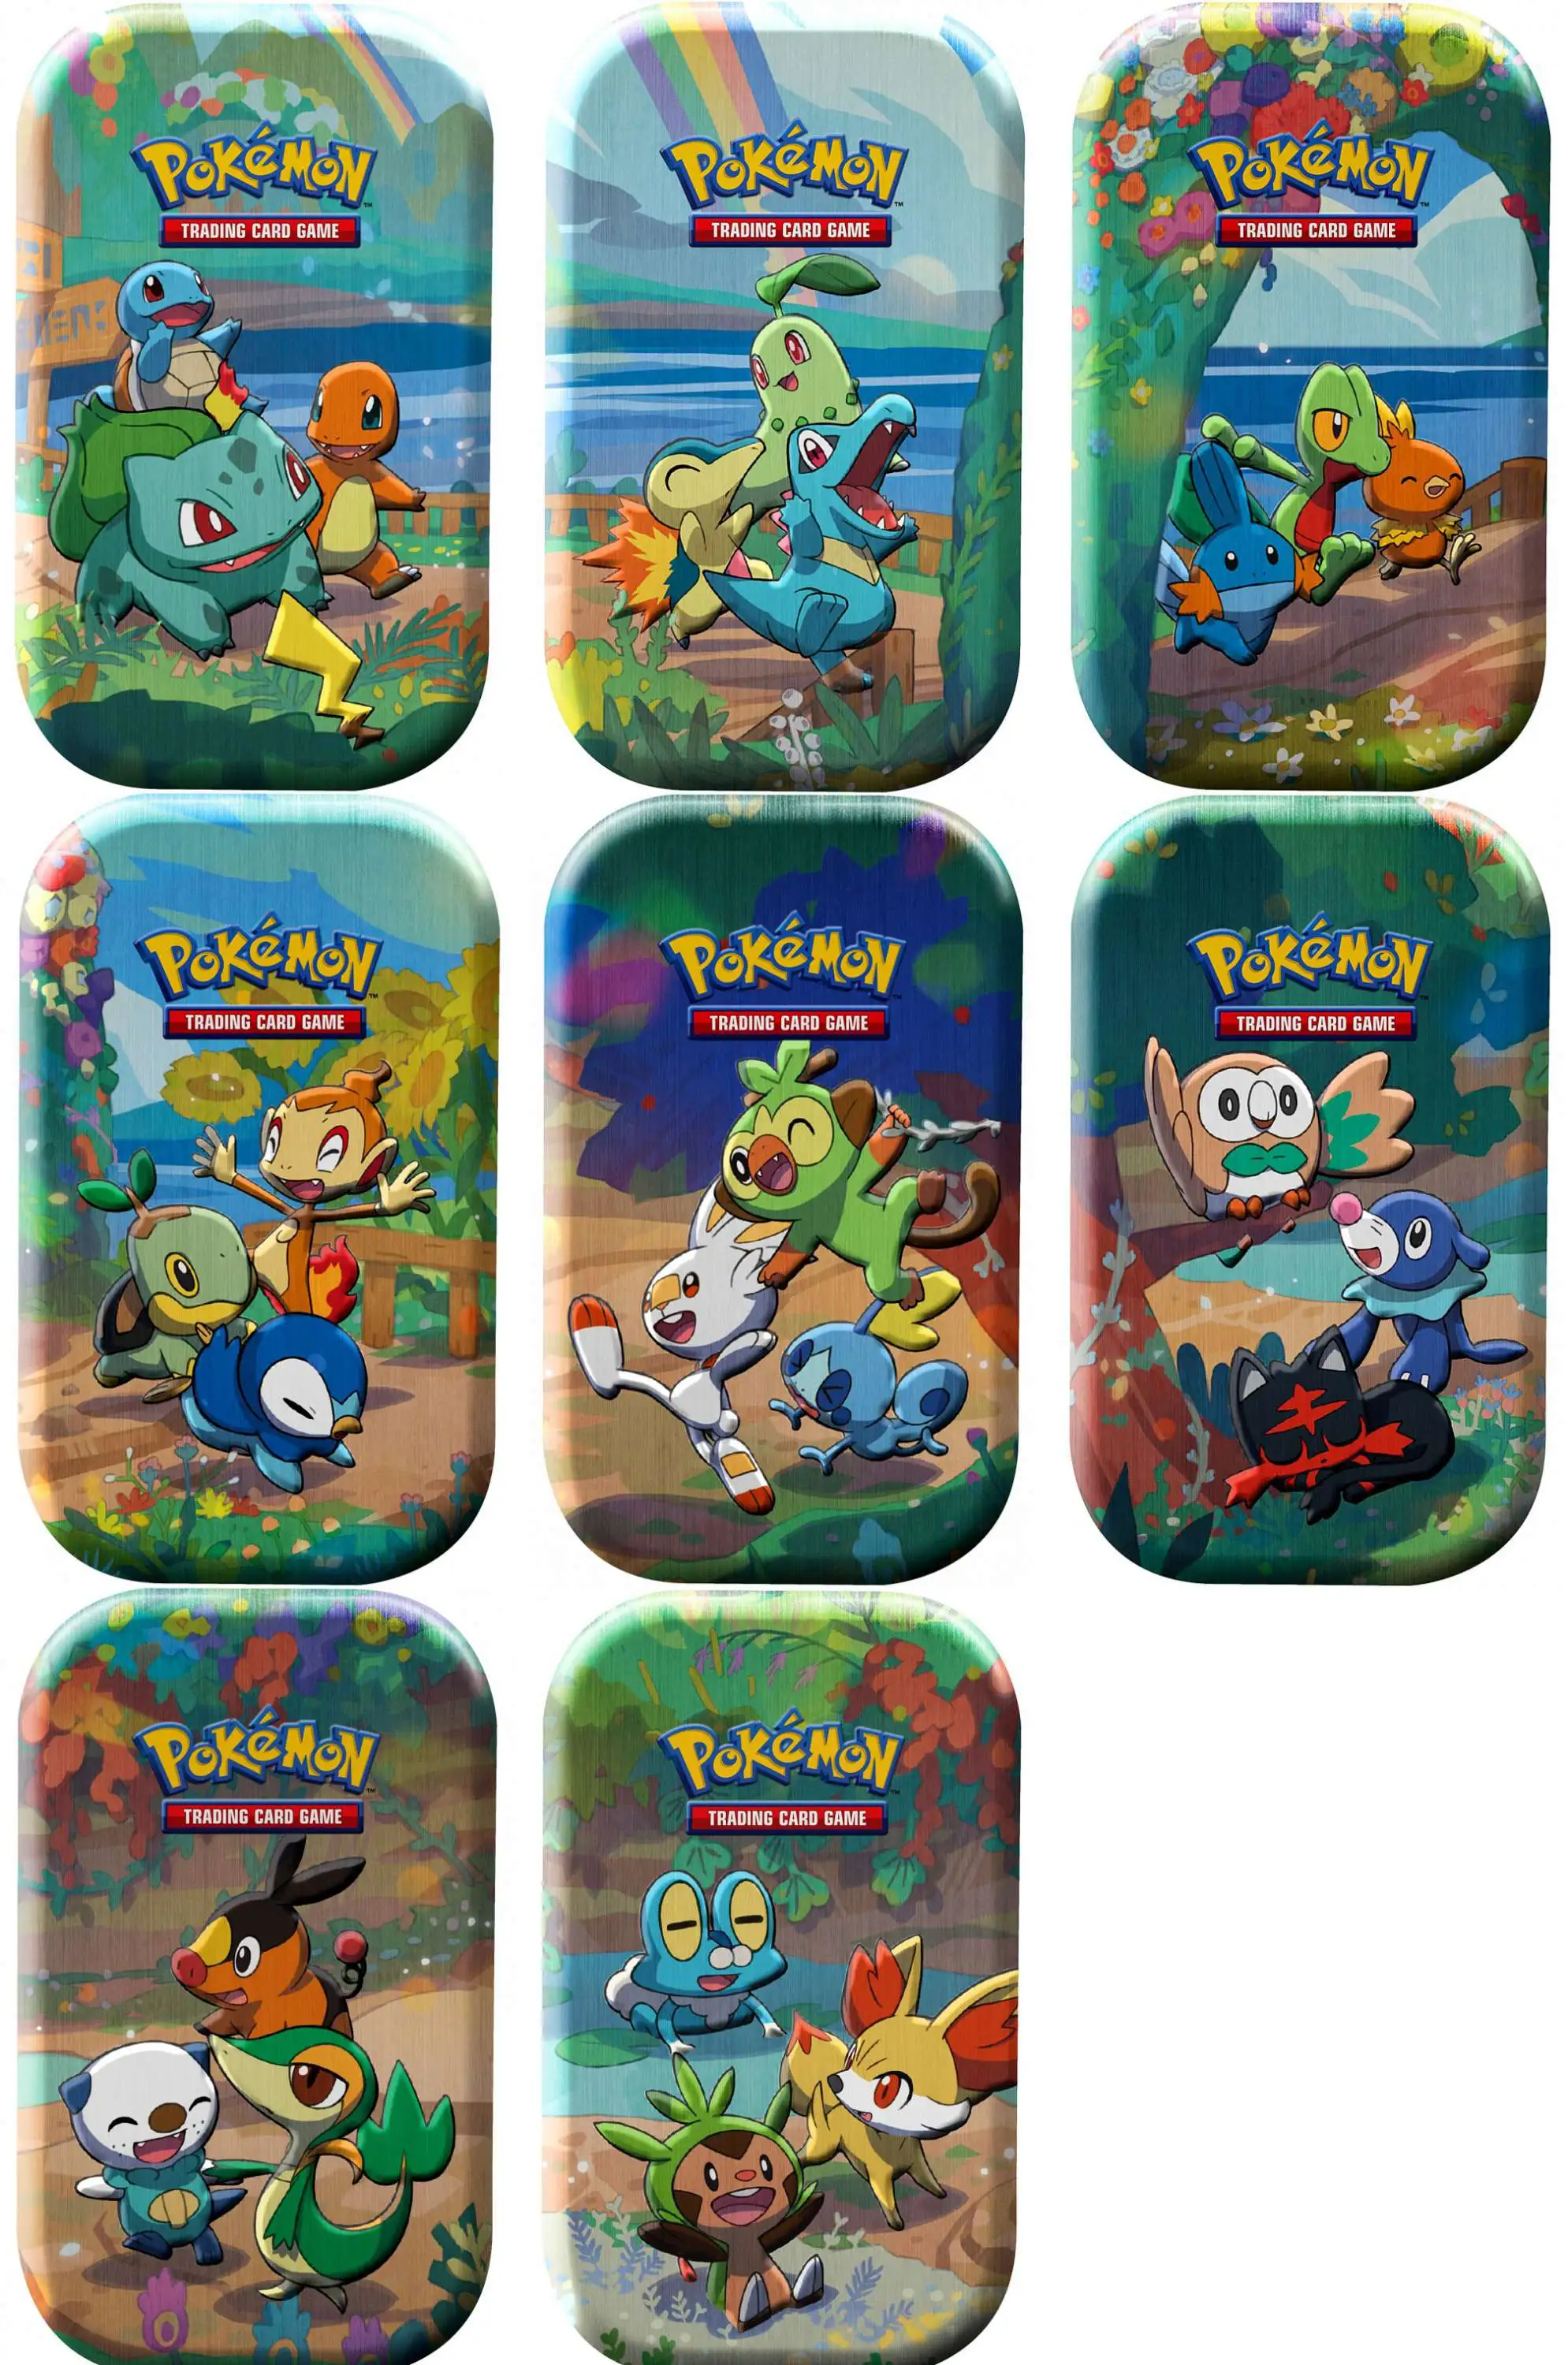 Pokemon Celebrations Collection Mini Tin 5th Generation Starters - Pokemon  Products » Pokemon Mini Tins - Treasure Chest Games